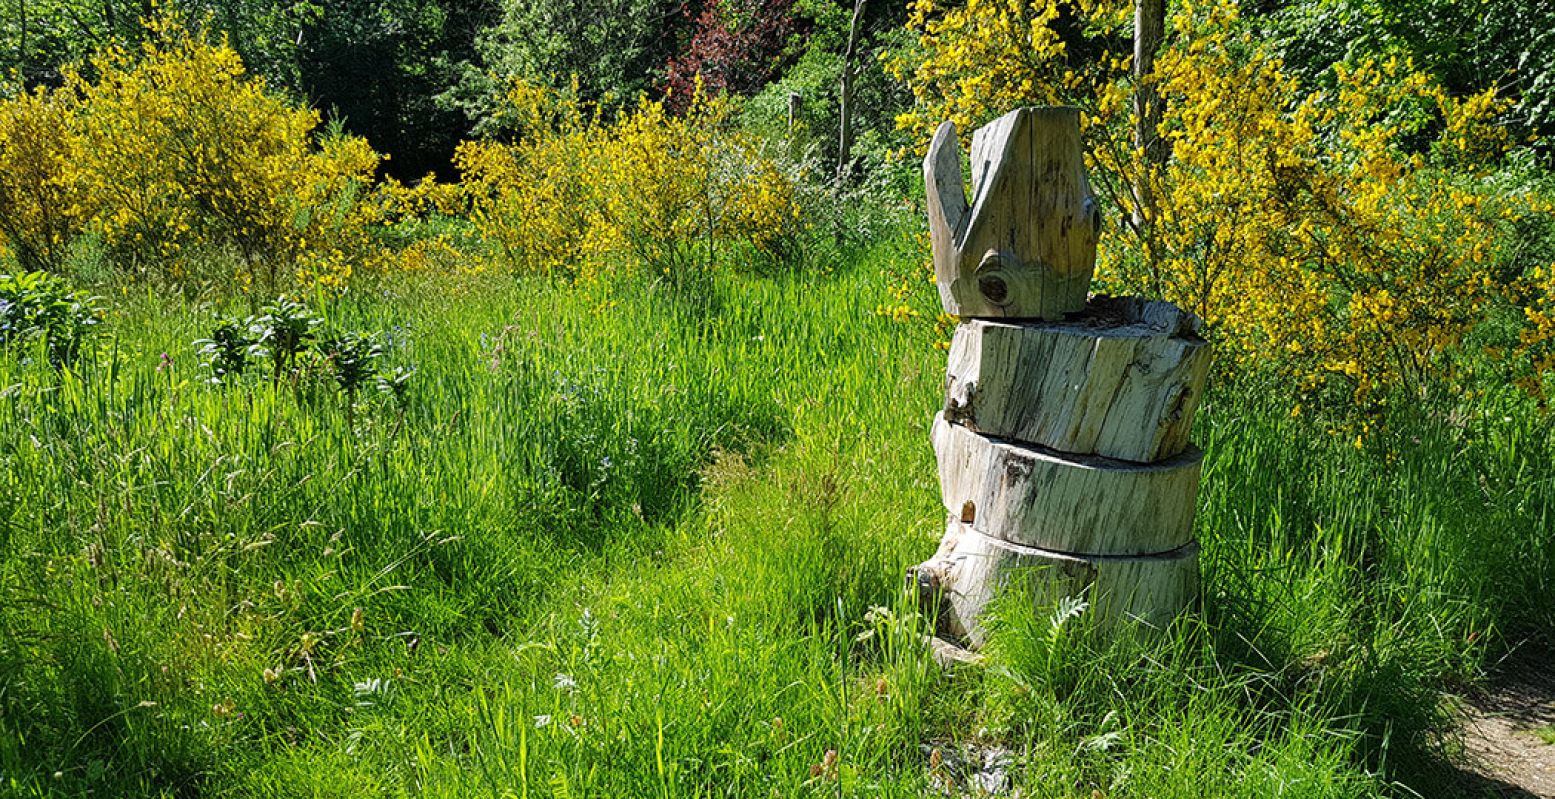 Onverwacht: een beeld in een groen hoekje. Oh, wacht, is dit een bijenhotel? Foto: DagjeWeg.NL Â© Tonny van Oosten